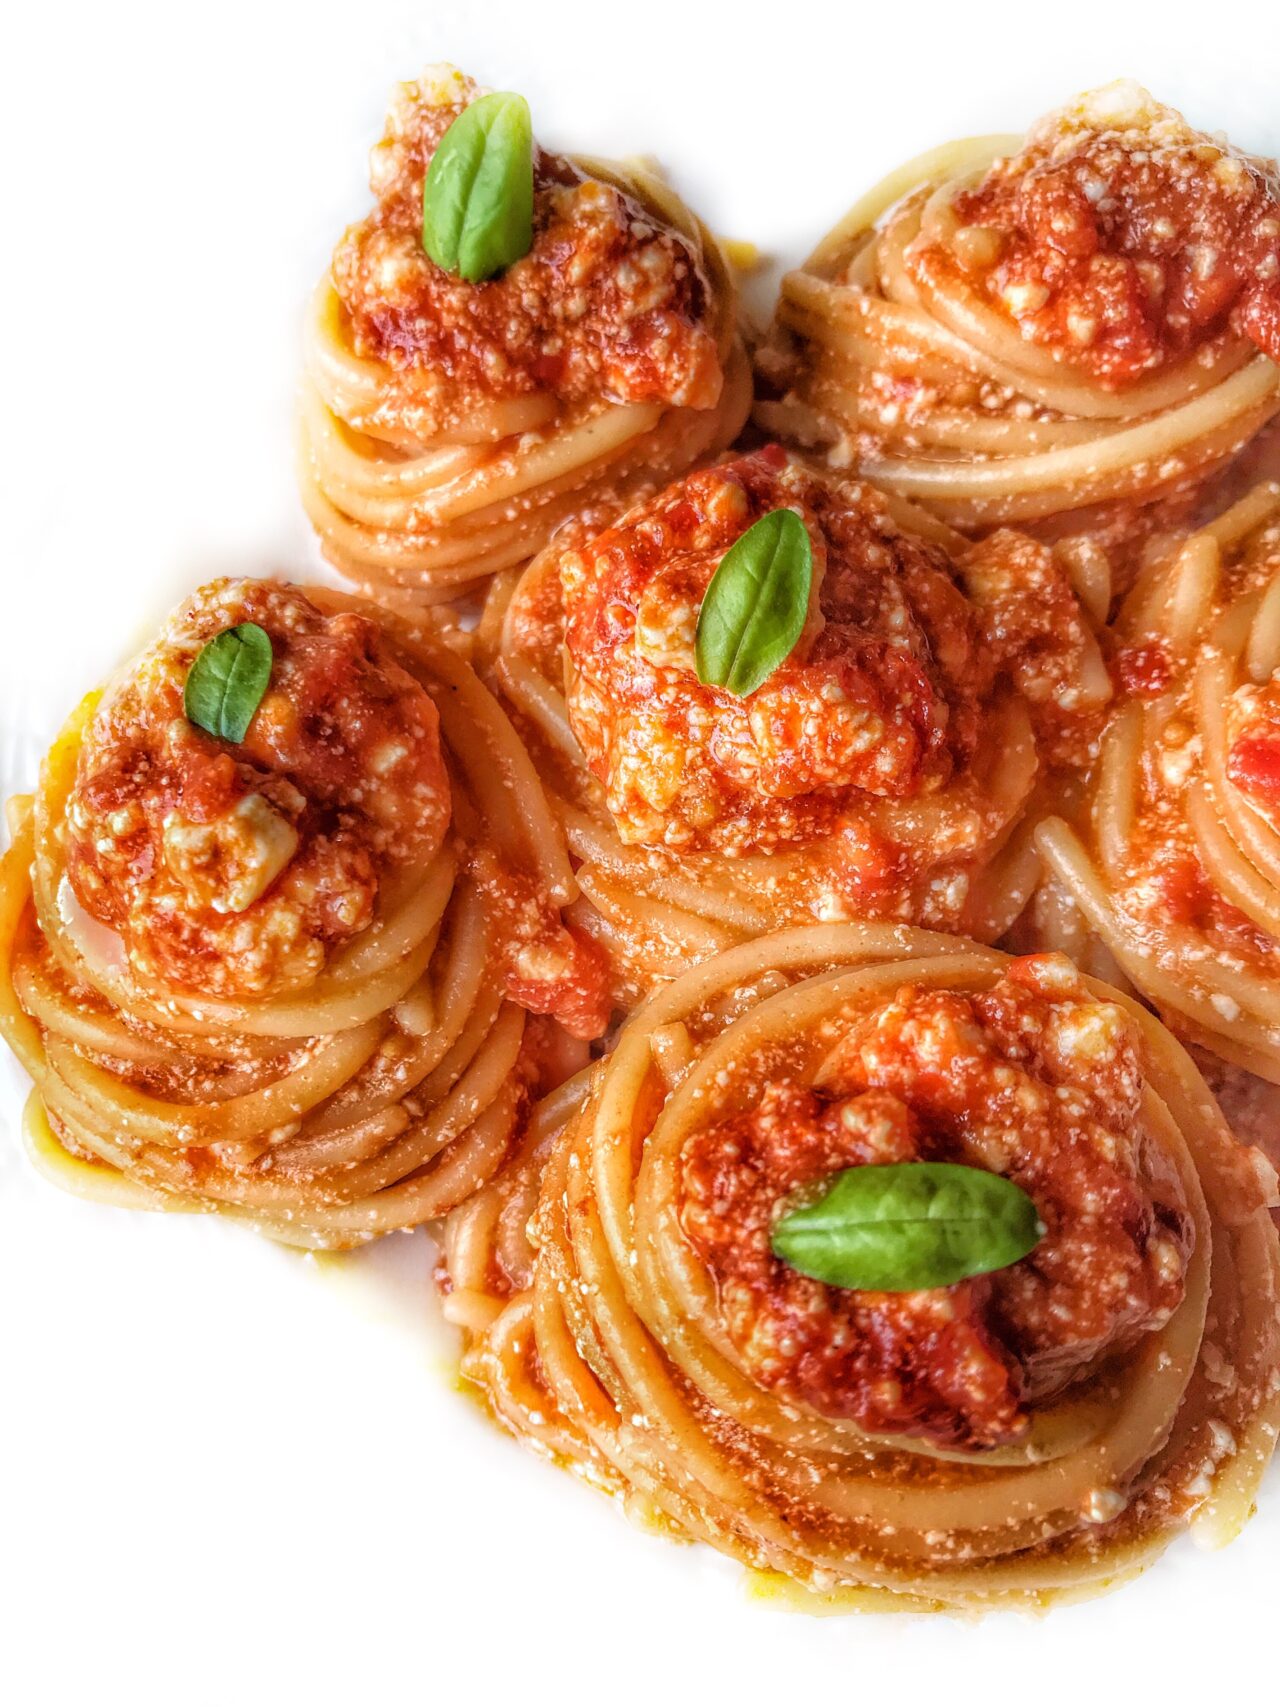 Spaghetti al sugo di pomodoro e ricotta